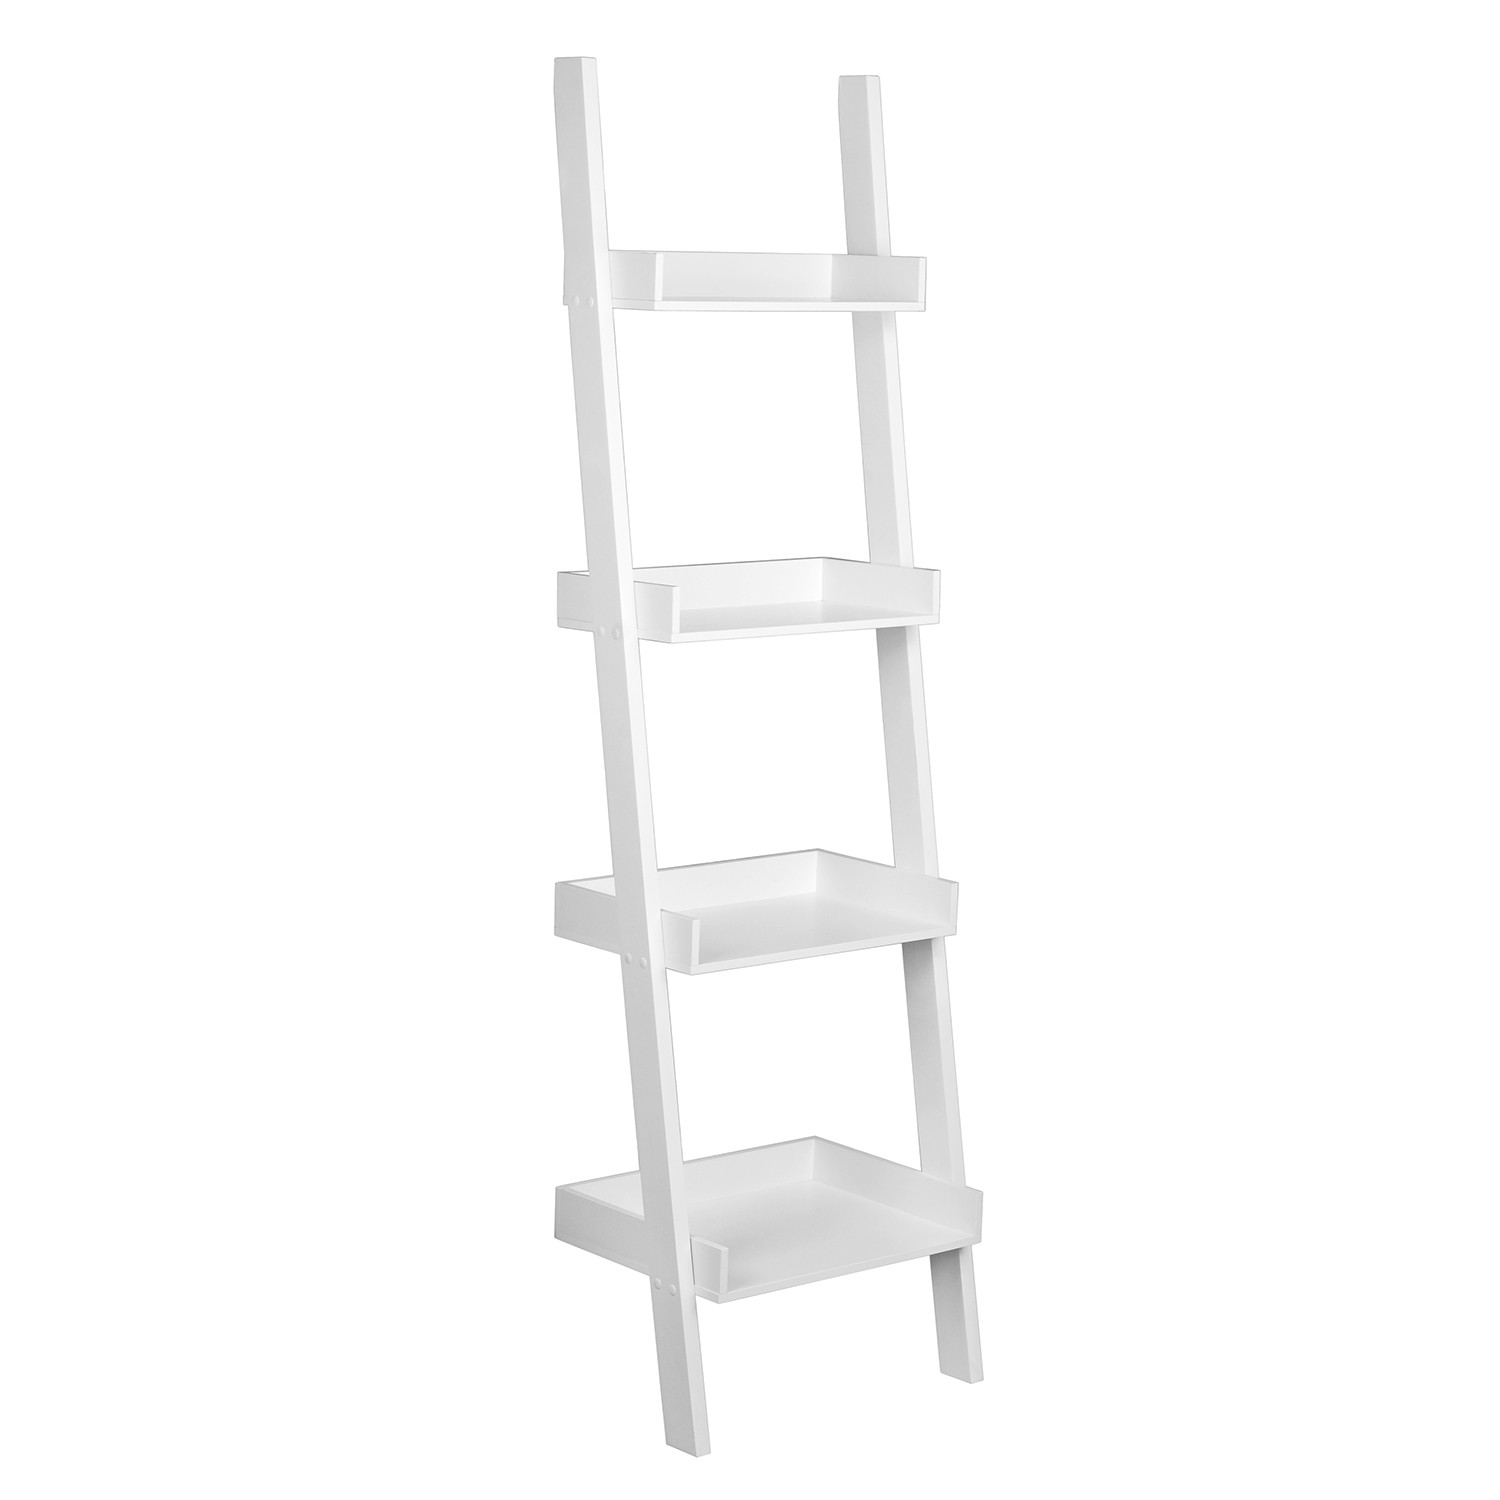 4 Shelf White Ladder Bookcase Shelf Image 2